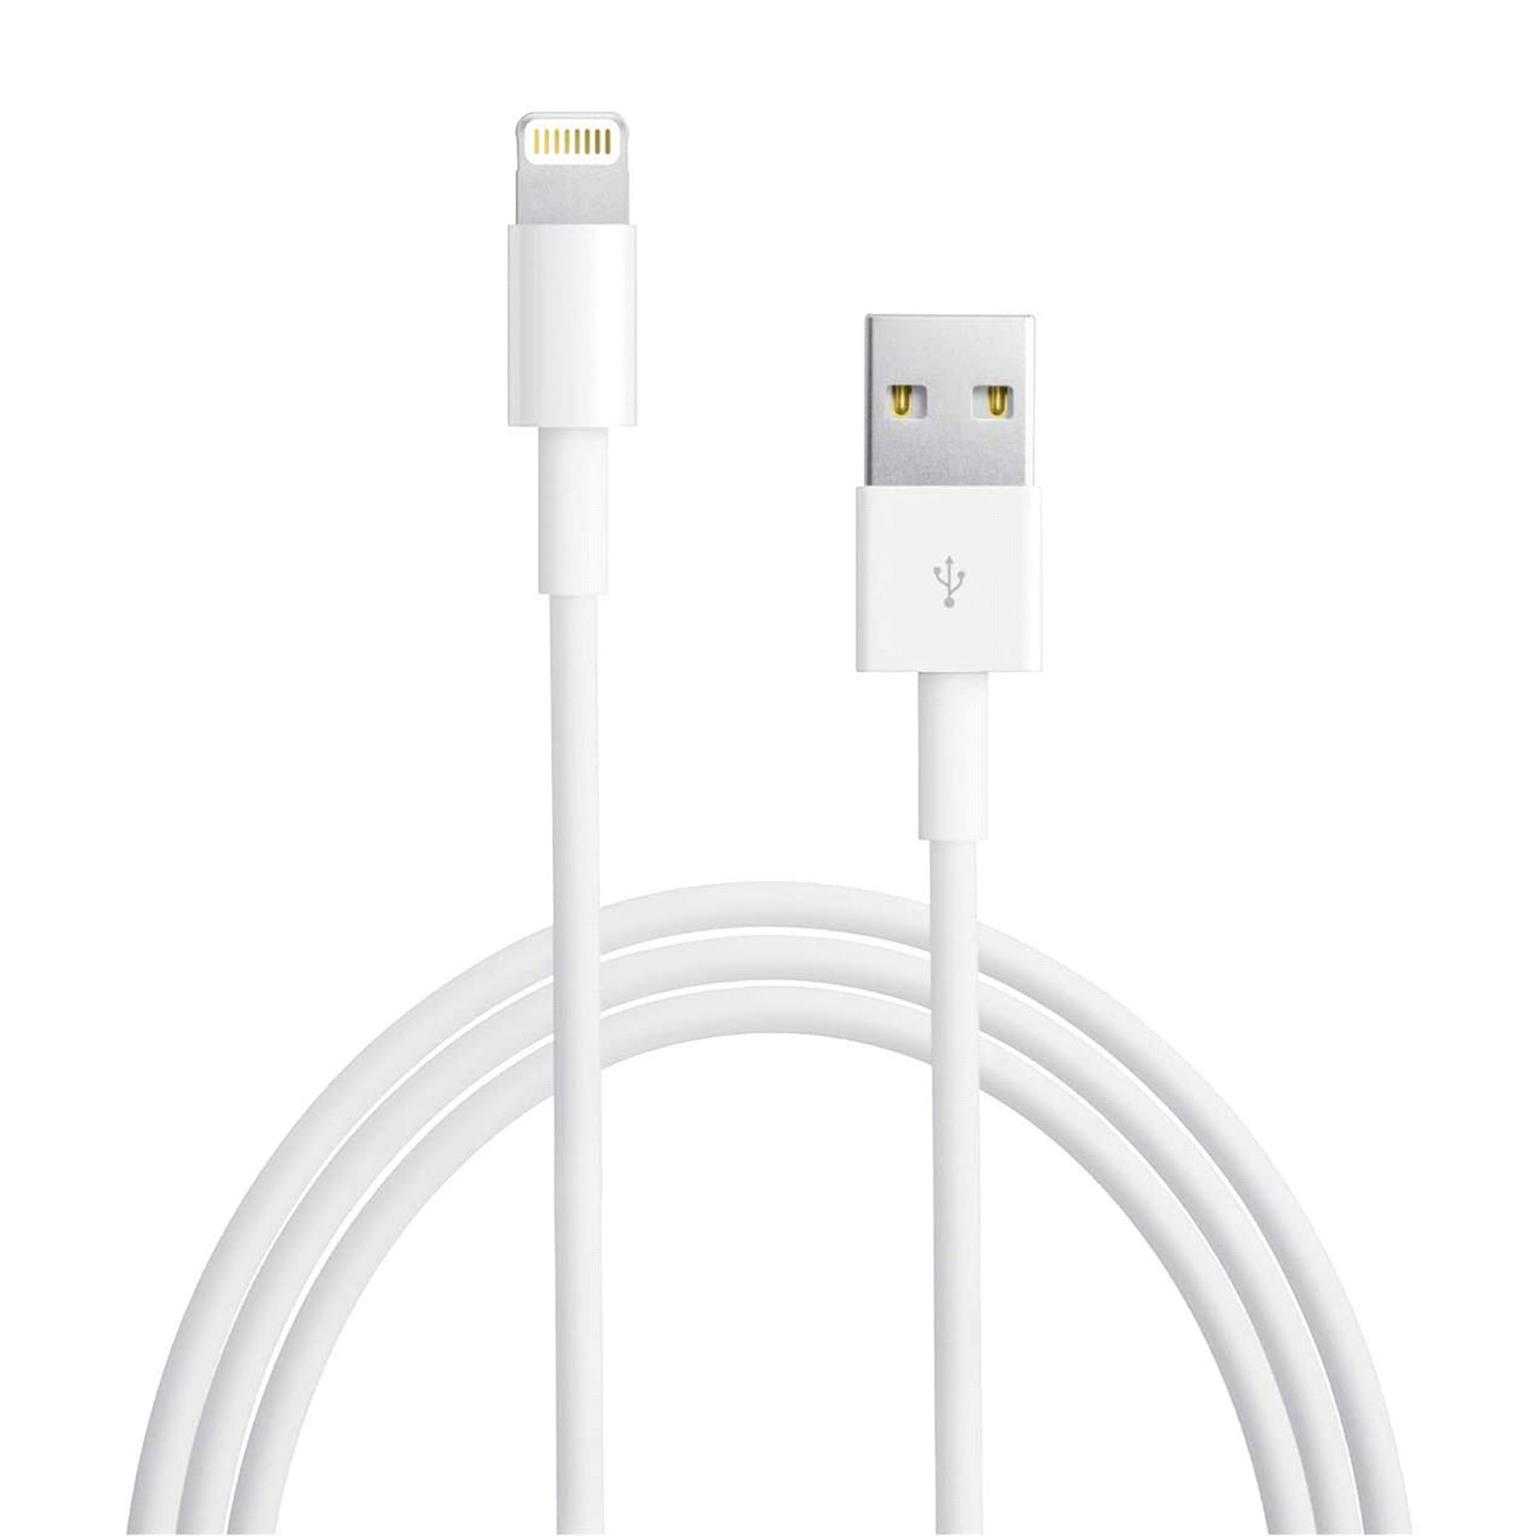 Apple iPhone Ladekabel – USB zu Lightning, Apple zertifiziert